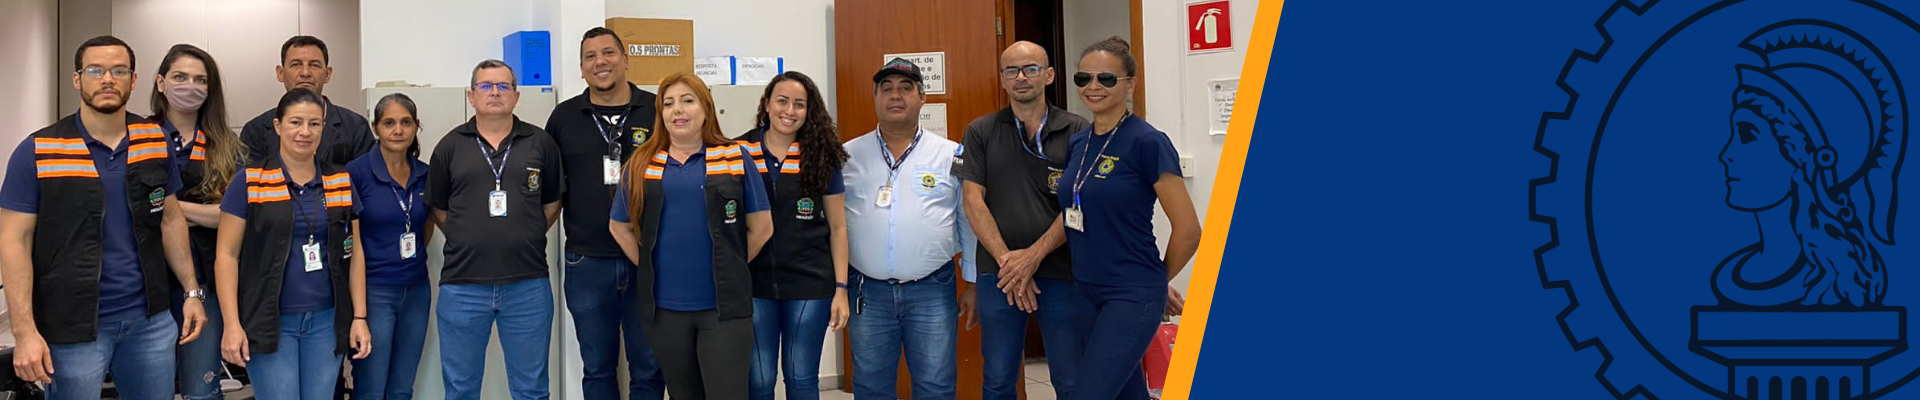 Em parceria com Prefeitura, Crea-MT realiza operação pente fino em Rondonópolis